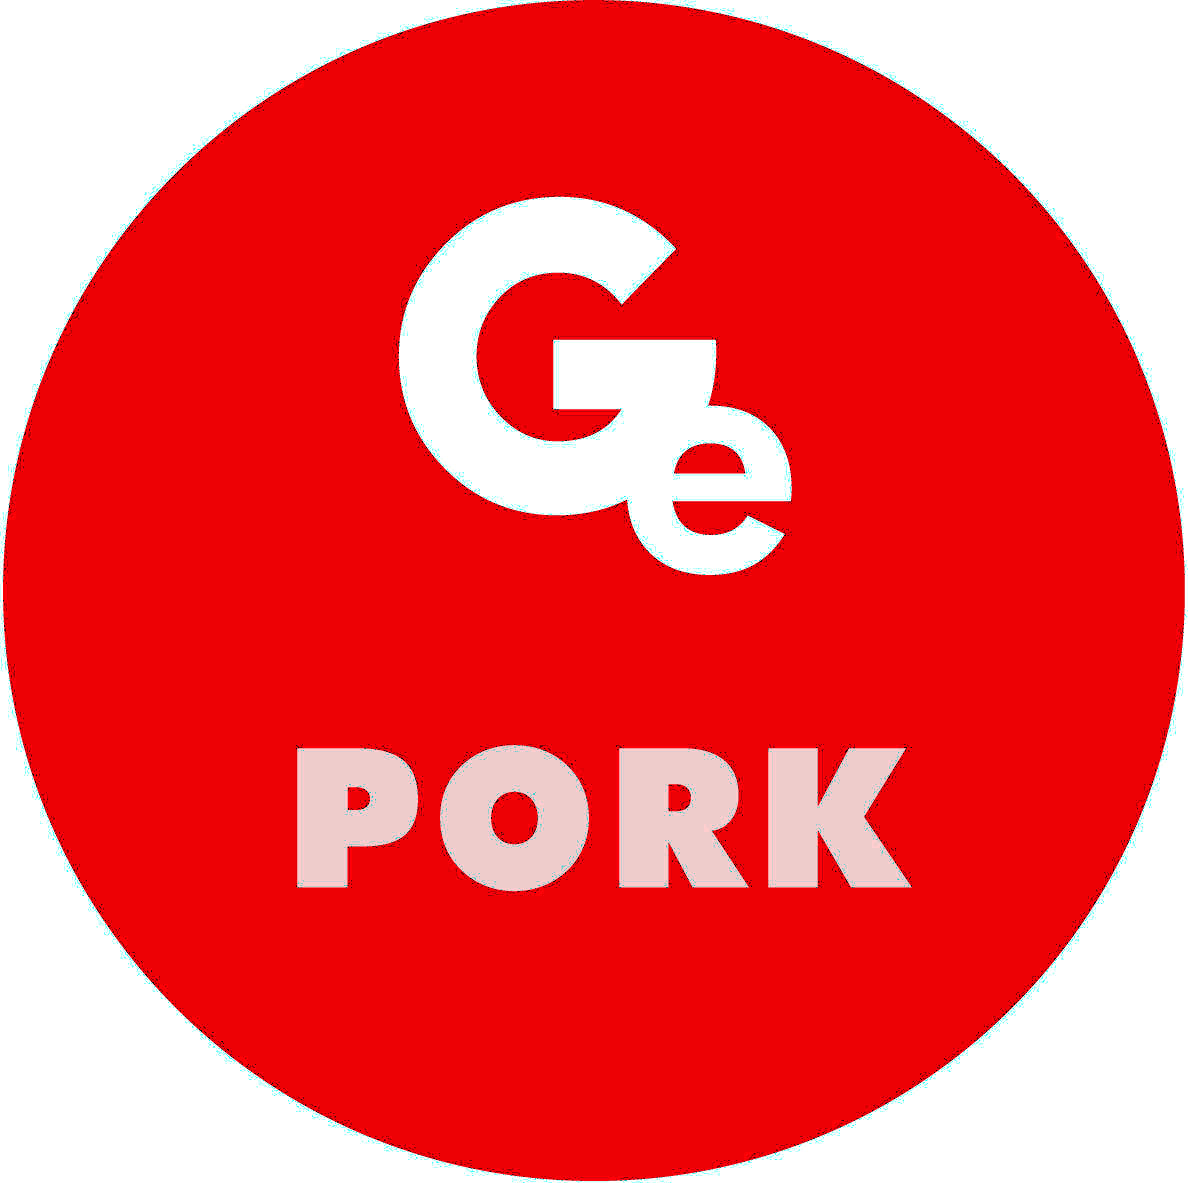 GE Pork